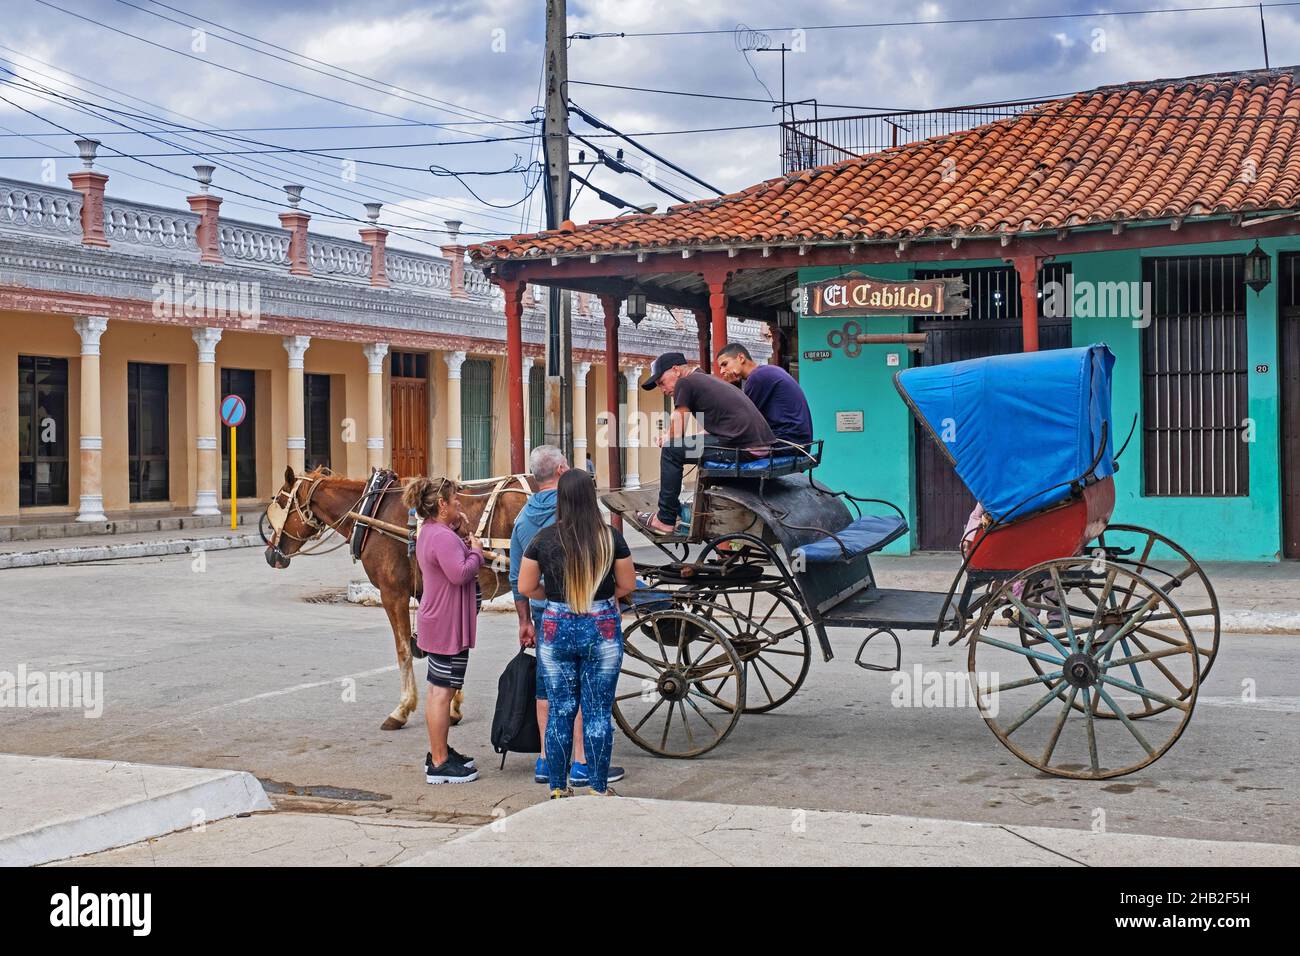 Touristen und Pferdekutsche vor dem Restaurant El Cabildo in der Stadt Ciego de Ávila auf der Insel Kuba, Karibik Stockfoto